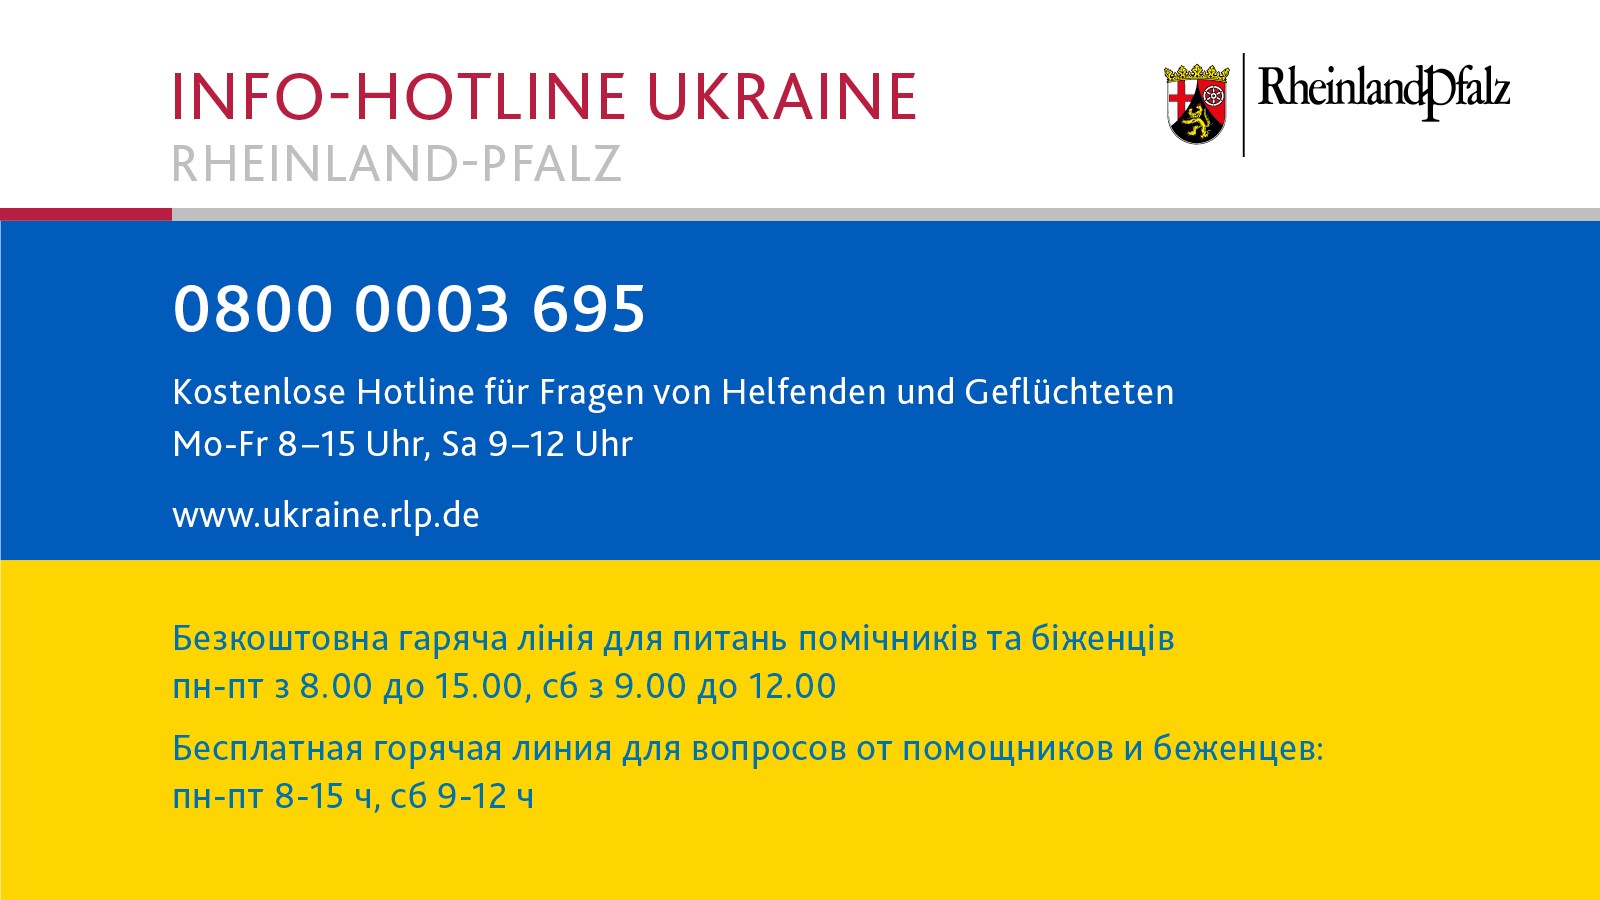 Telefonnummer der Ukraine-Hotline vor dem Hintergrund der Ukraineflagge: 0800 0003 695